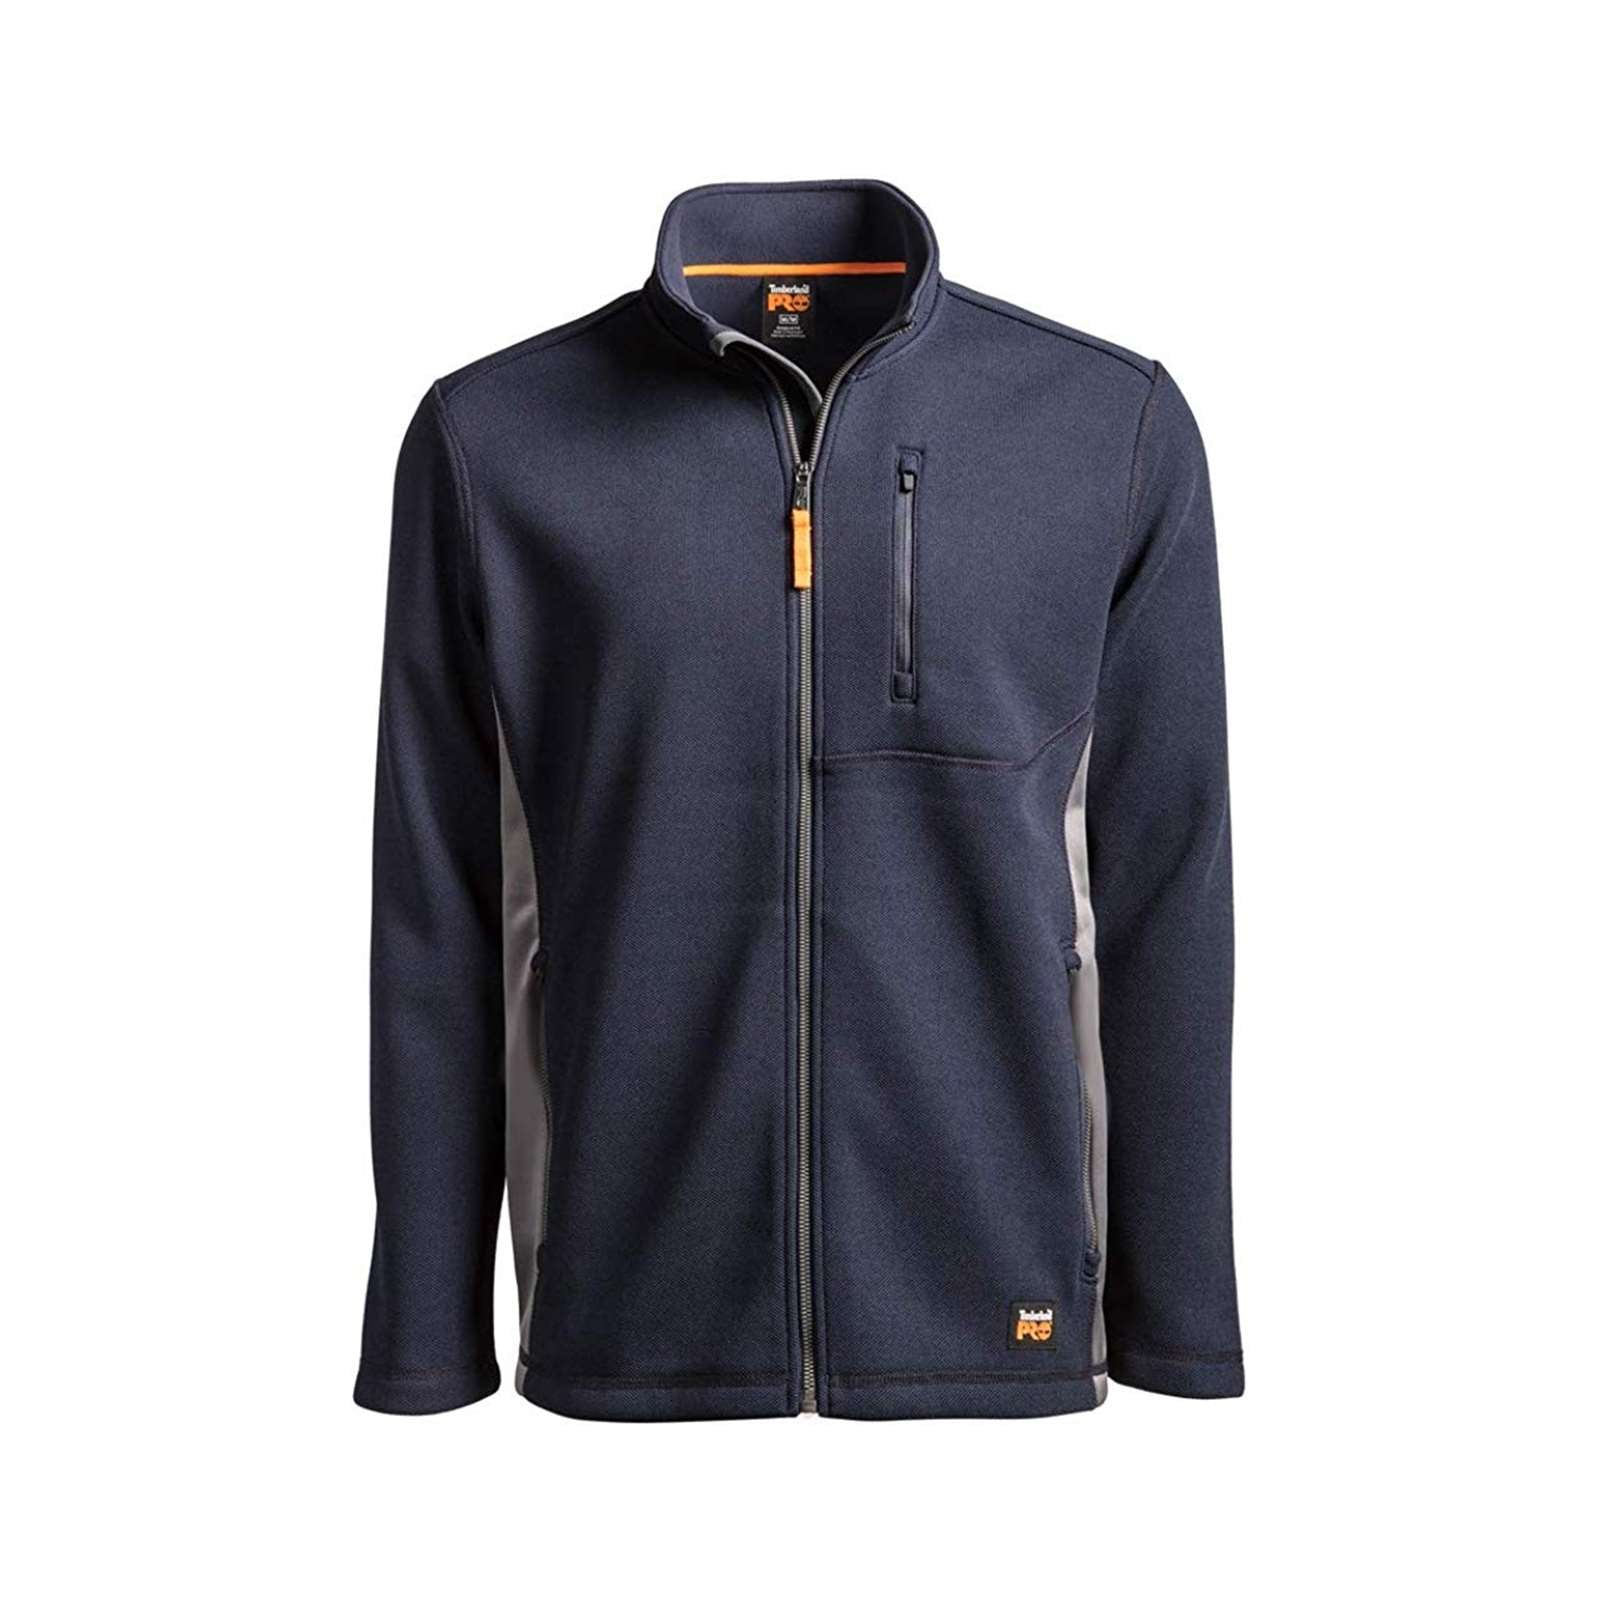 Timberland Pro Men Studwall Full-Zip Fleece Shirt